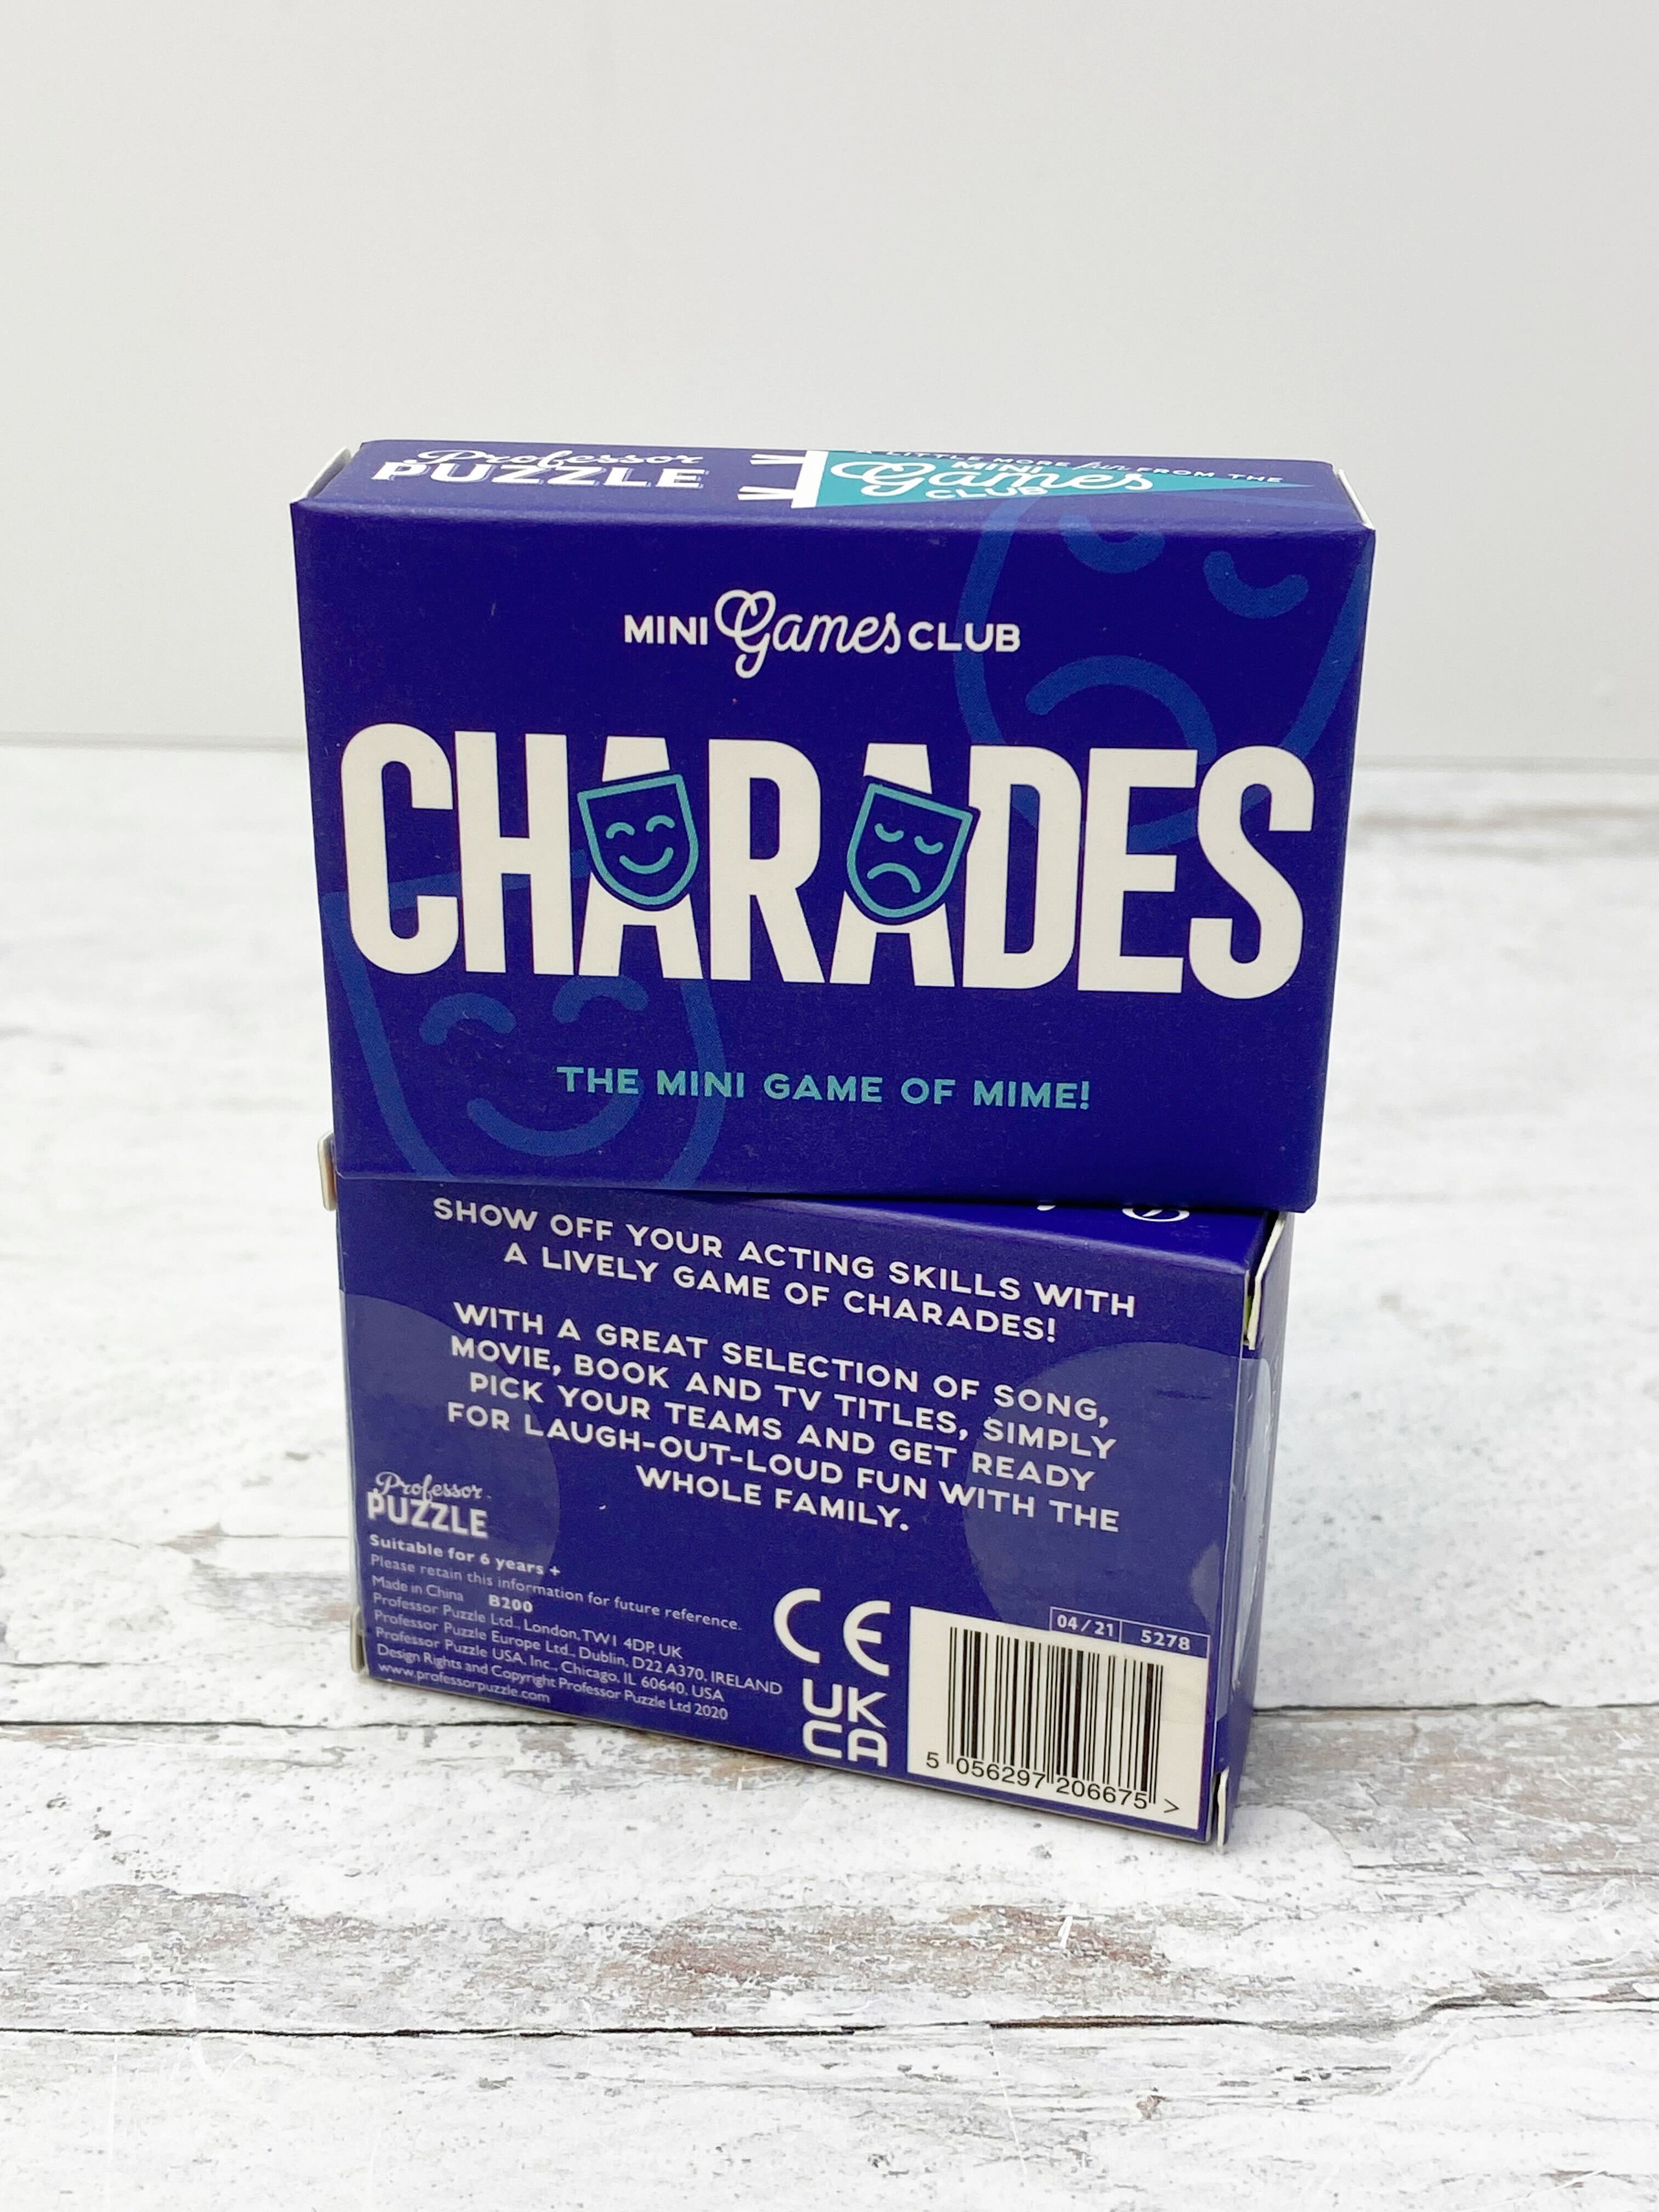 Mini Games Club - Charades